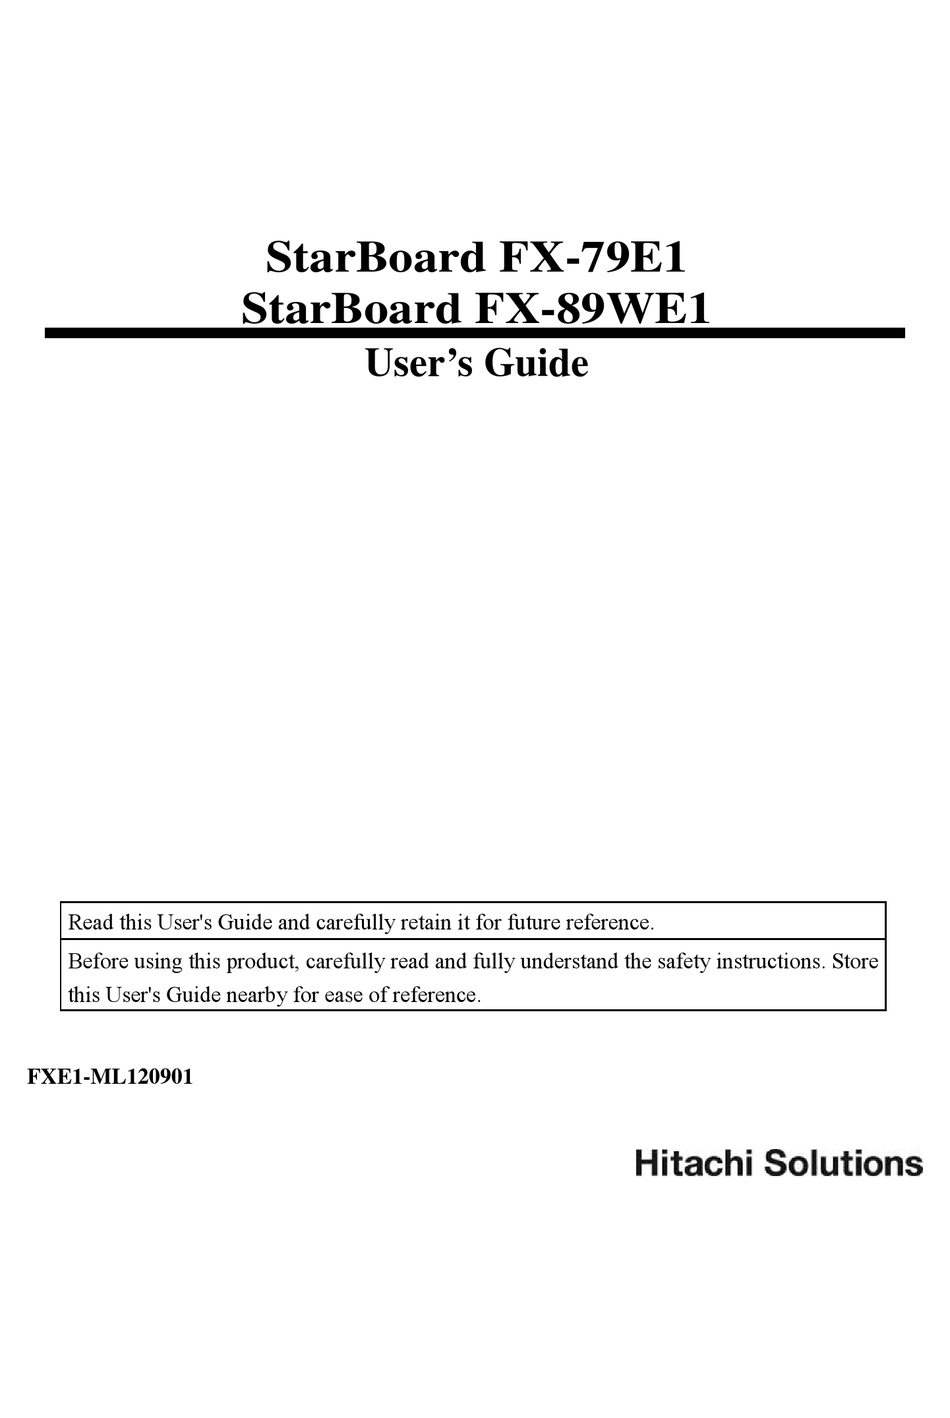 hitachi starboard vs smartboard